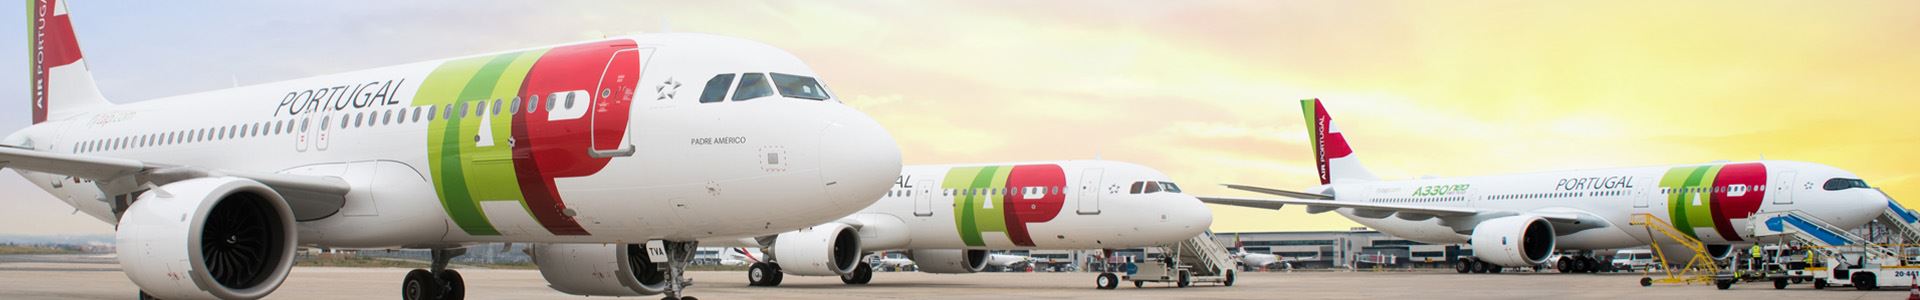 Фотография, показывающая три самолета, расположенных бок о бок, украшенных цветами и логотипом TAP Air Portugal.